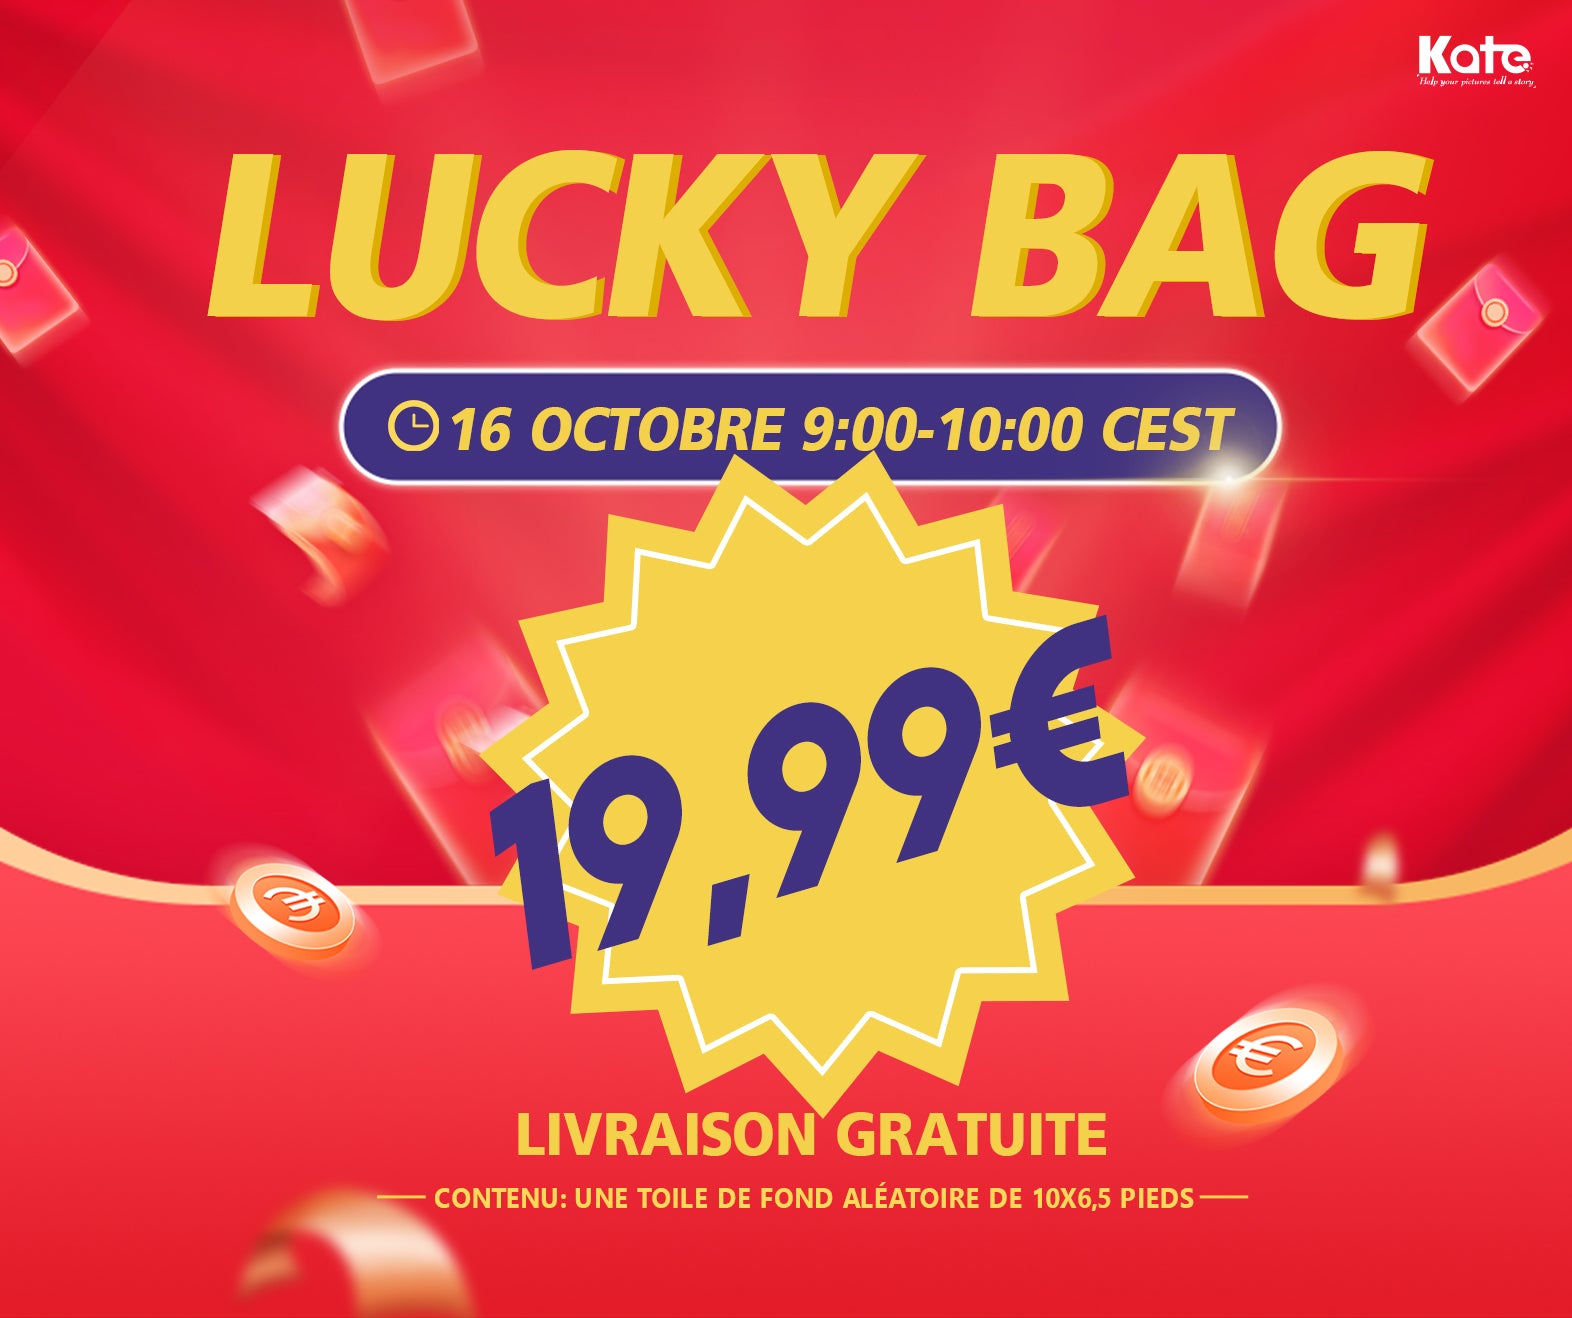 Lucky Bags avec LIVRAISON GRATUITE —— Chaque personne ne peut acheter qu’un seul lucky bag. (Heure d'ouverture: 9:00-10:00 CEST le 17 octobre)